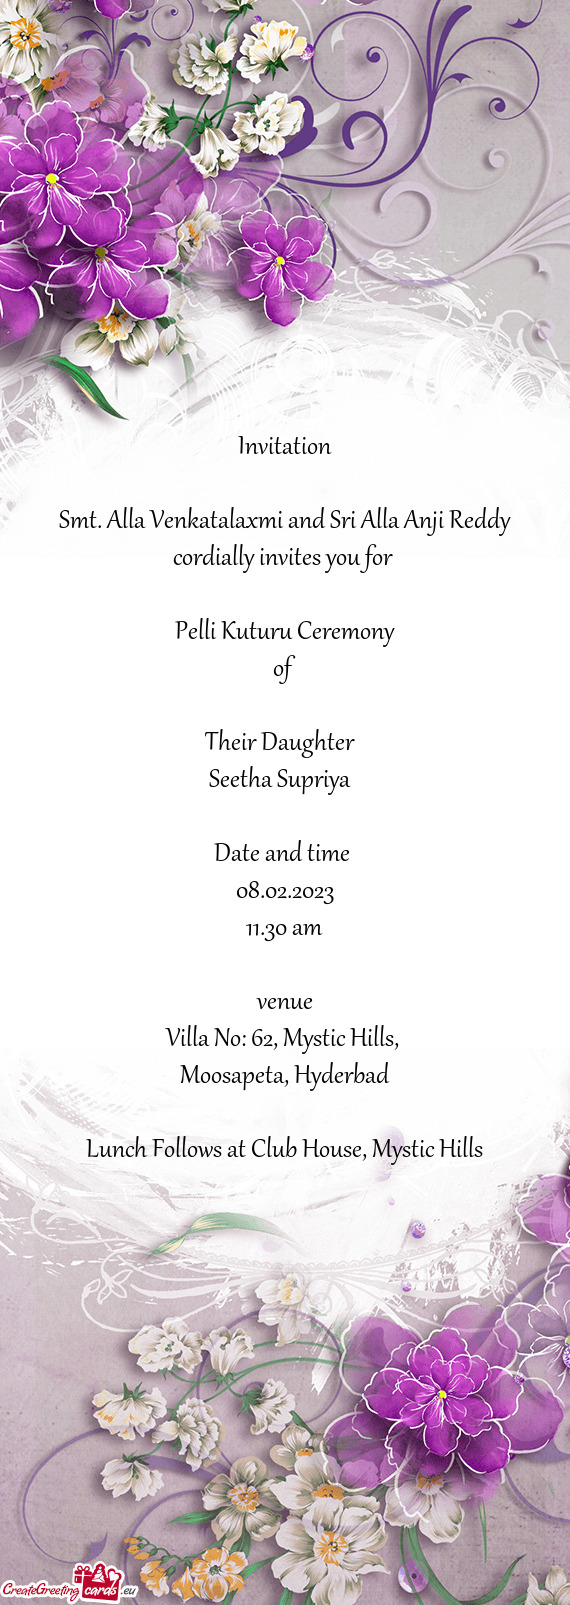 Smt. Alla Venkatalaxmi and Sri Alla Anji Reddy cordially invites you for